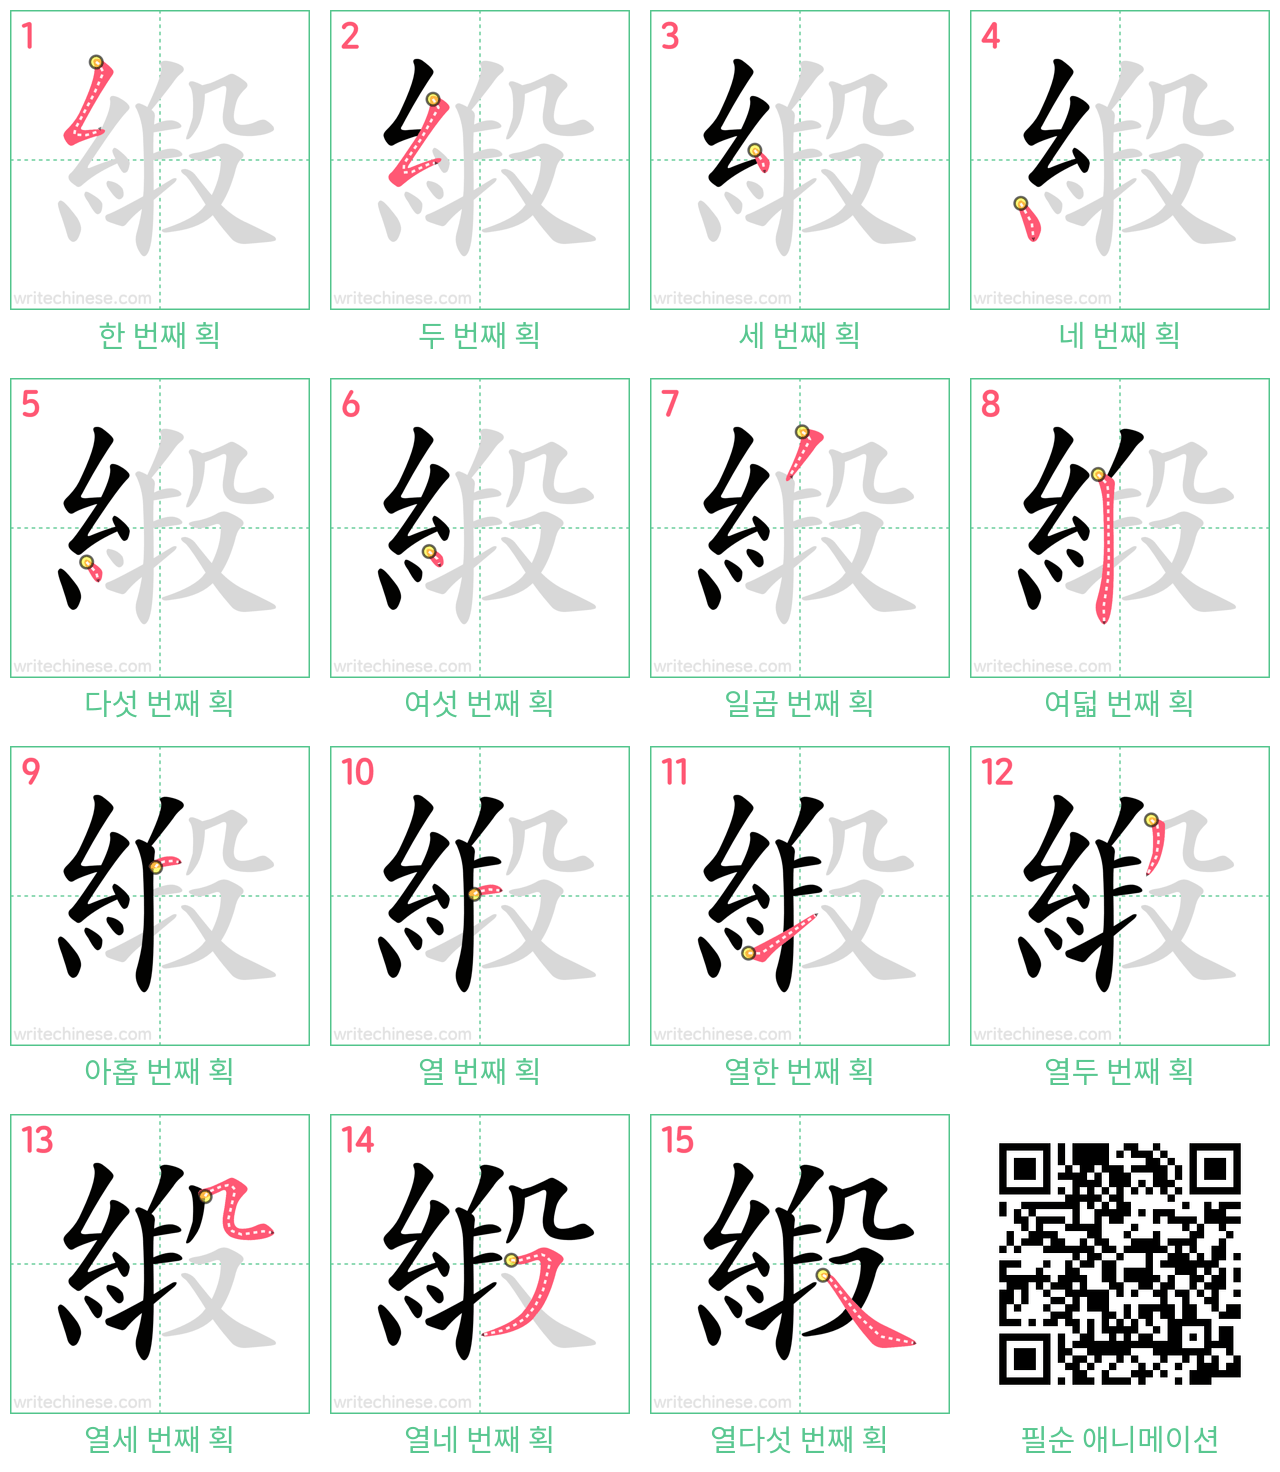 緞 step-by-step stroke order diagrams